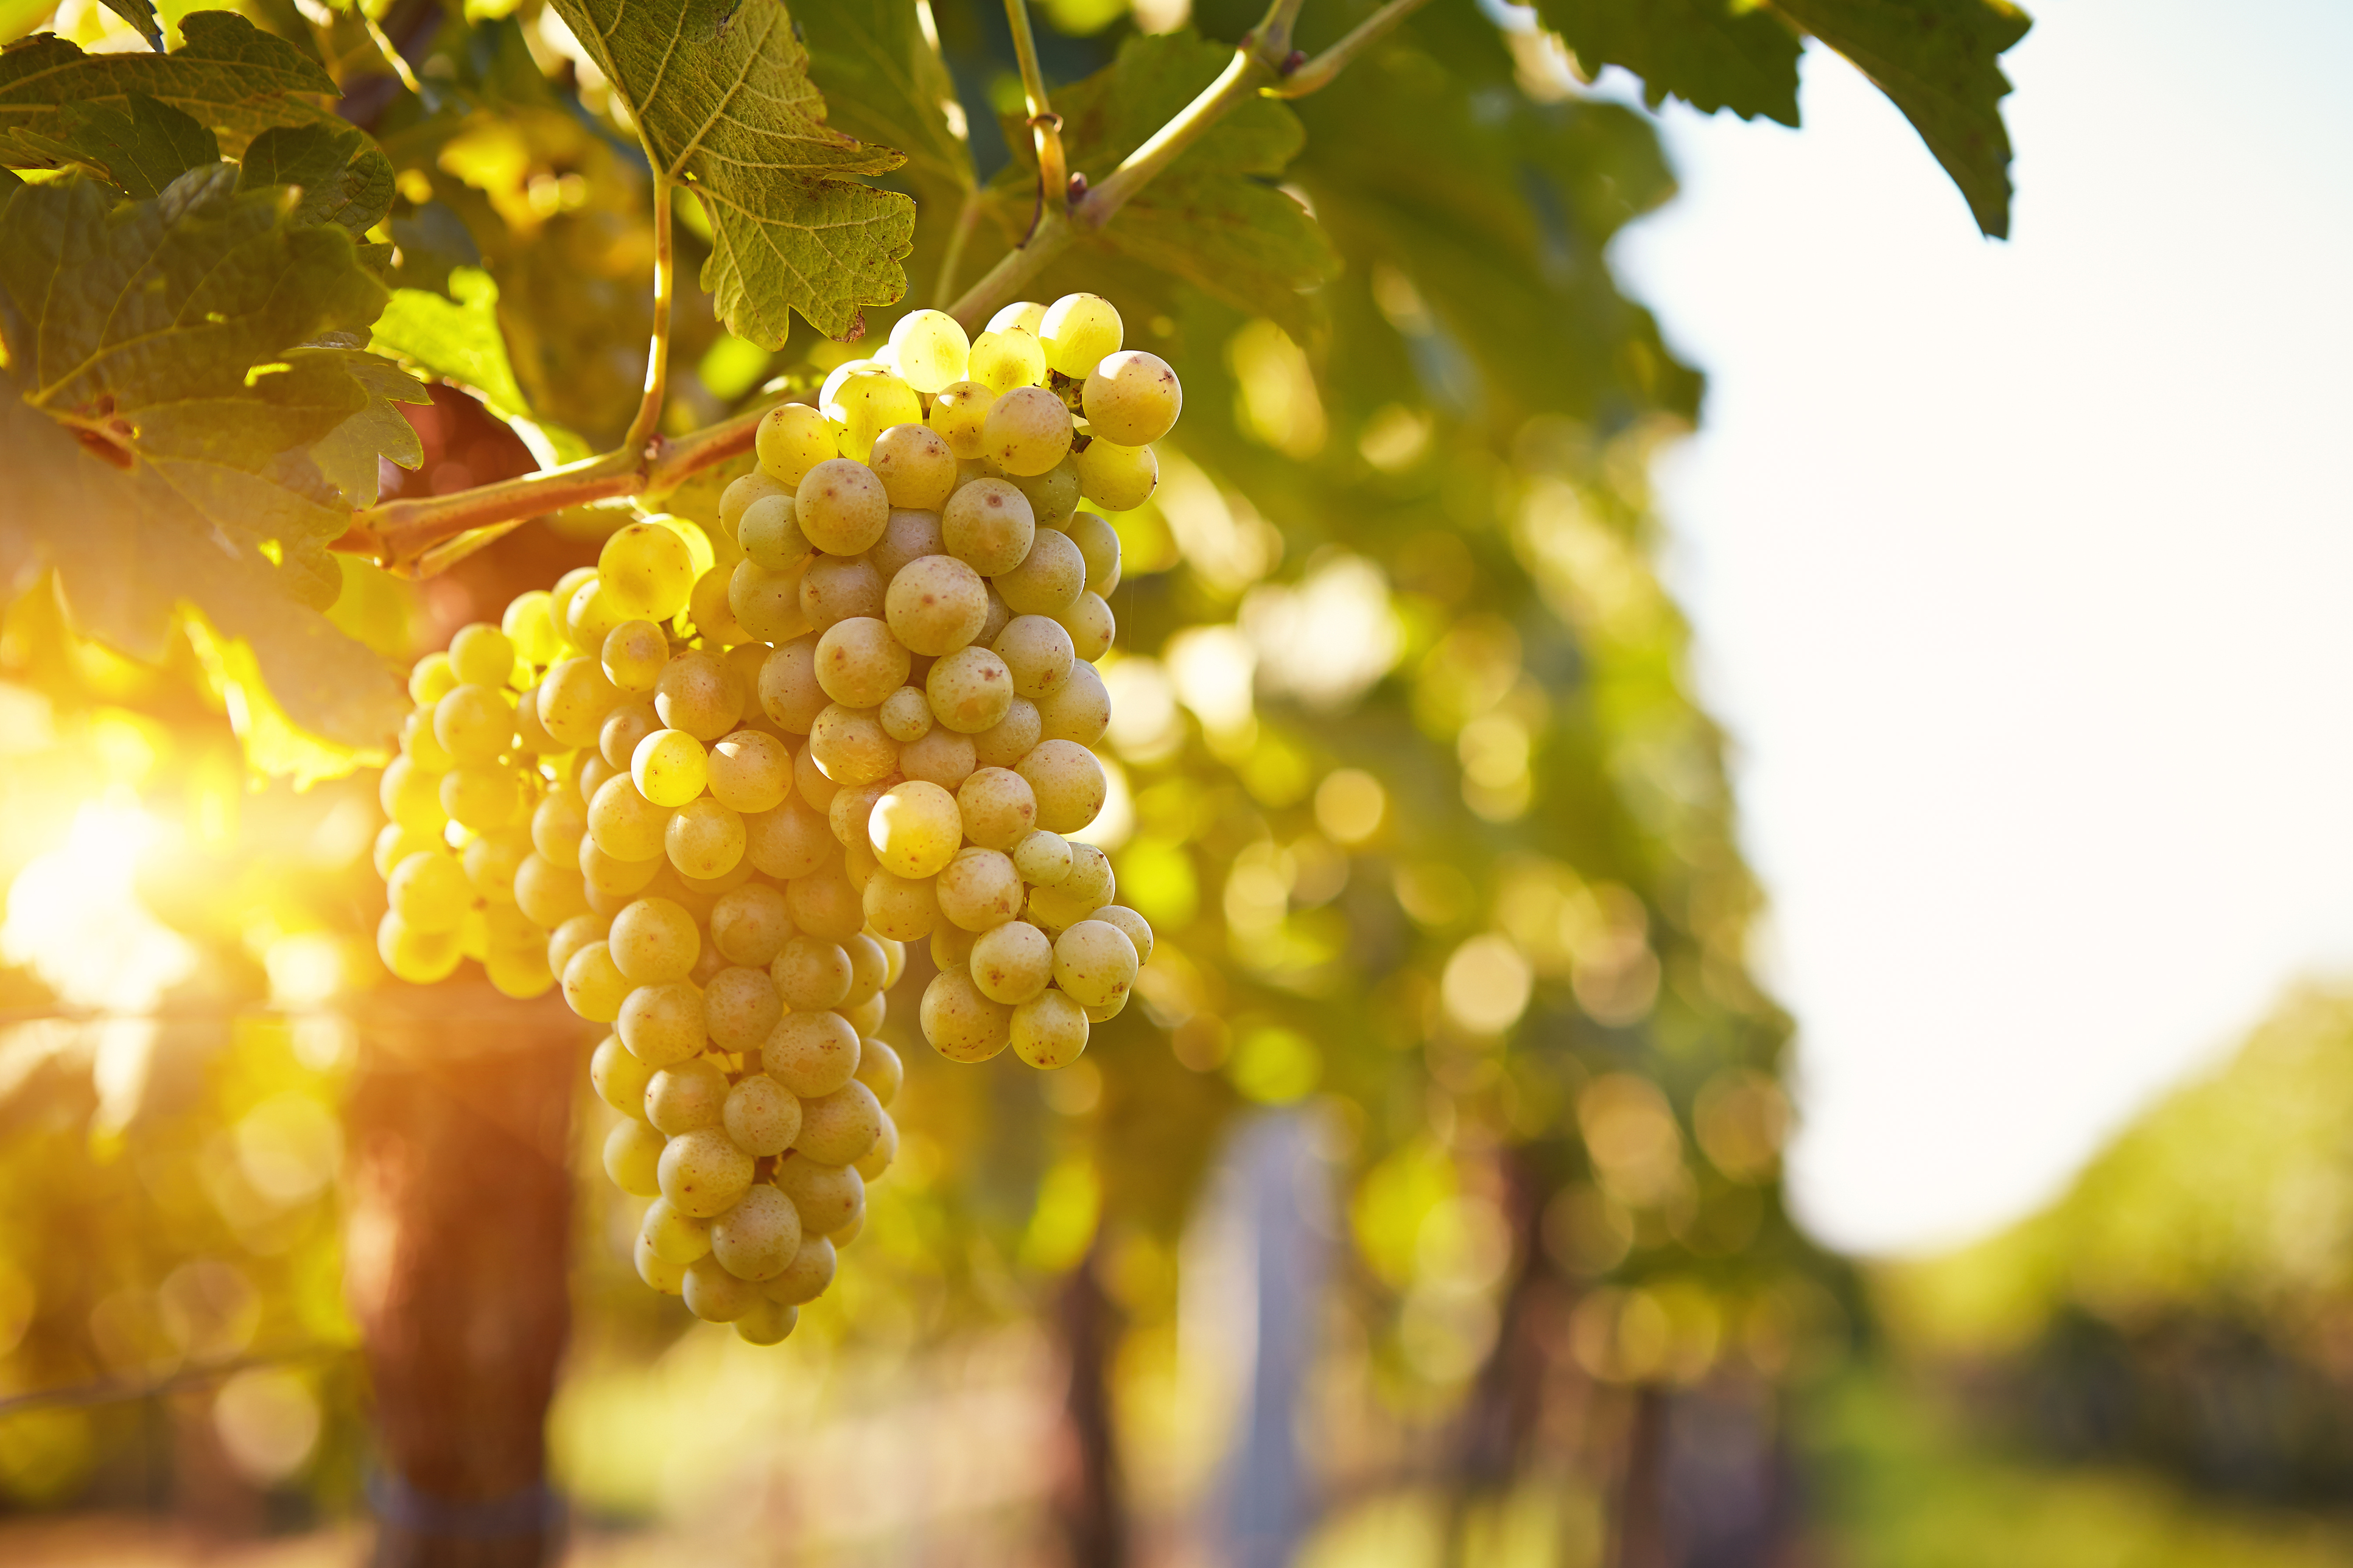 Invertek Drives helps provide a sparkling success for UK vineyard